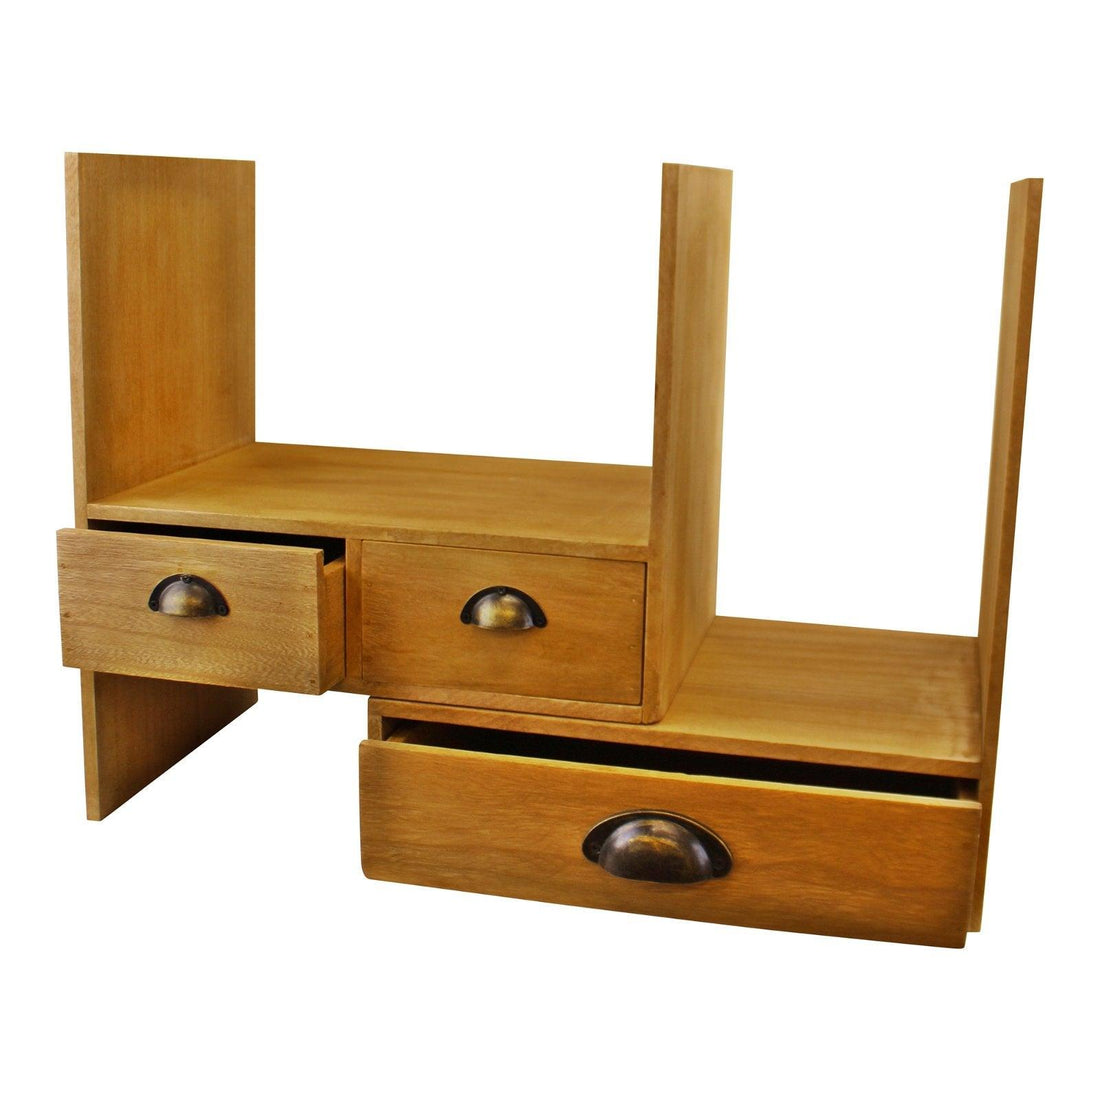 Wooden Desktop Storage Unit - £59.99 - Office Storage Solutions 